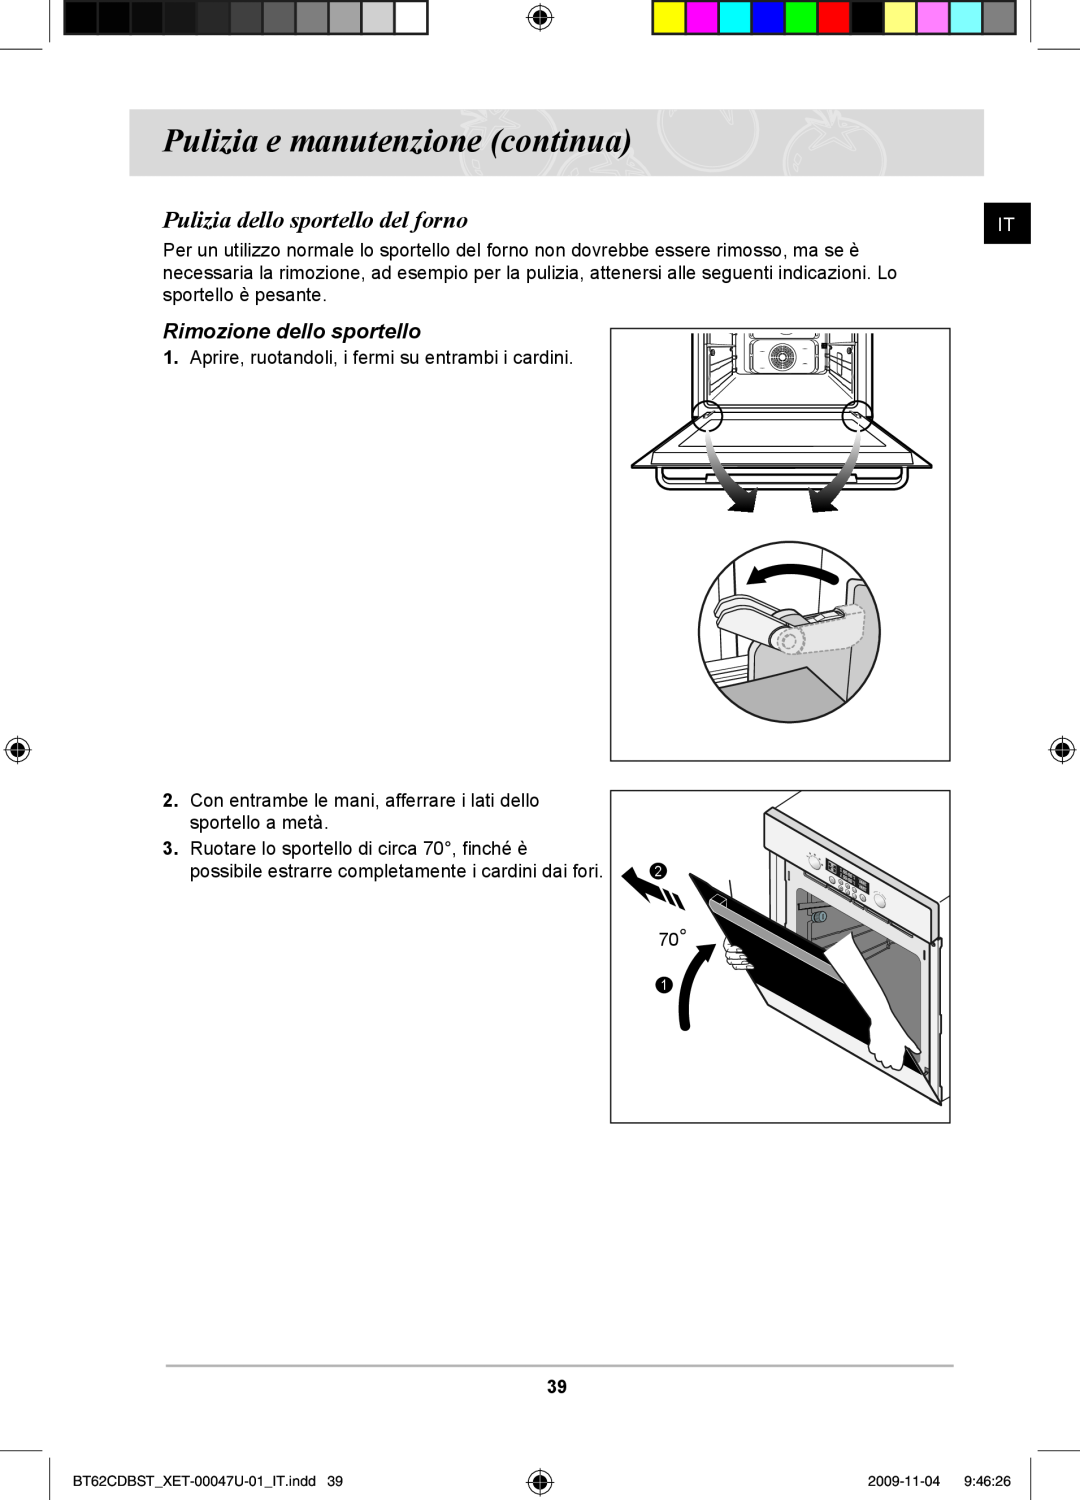 Samsung BT62CDBST/XET manual Pulizia dello sportello del forno, Rimozione dello sportello, Pulizia e manutenzione continua 